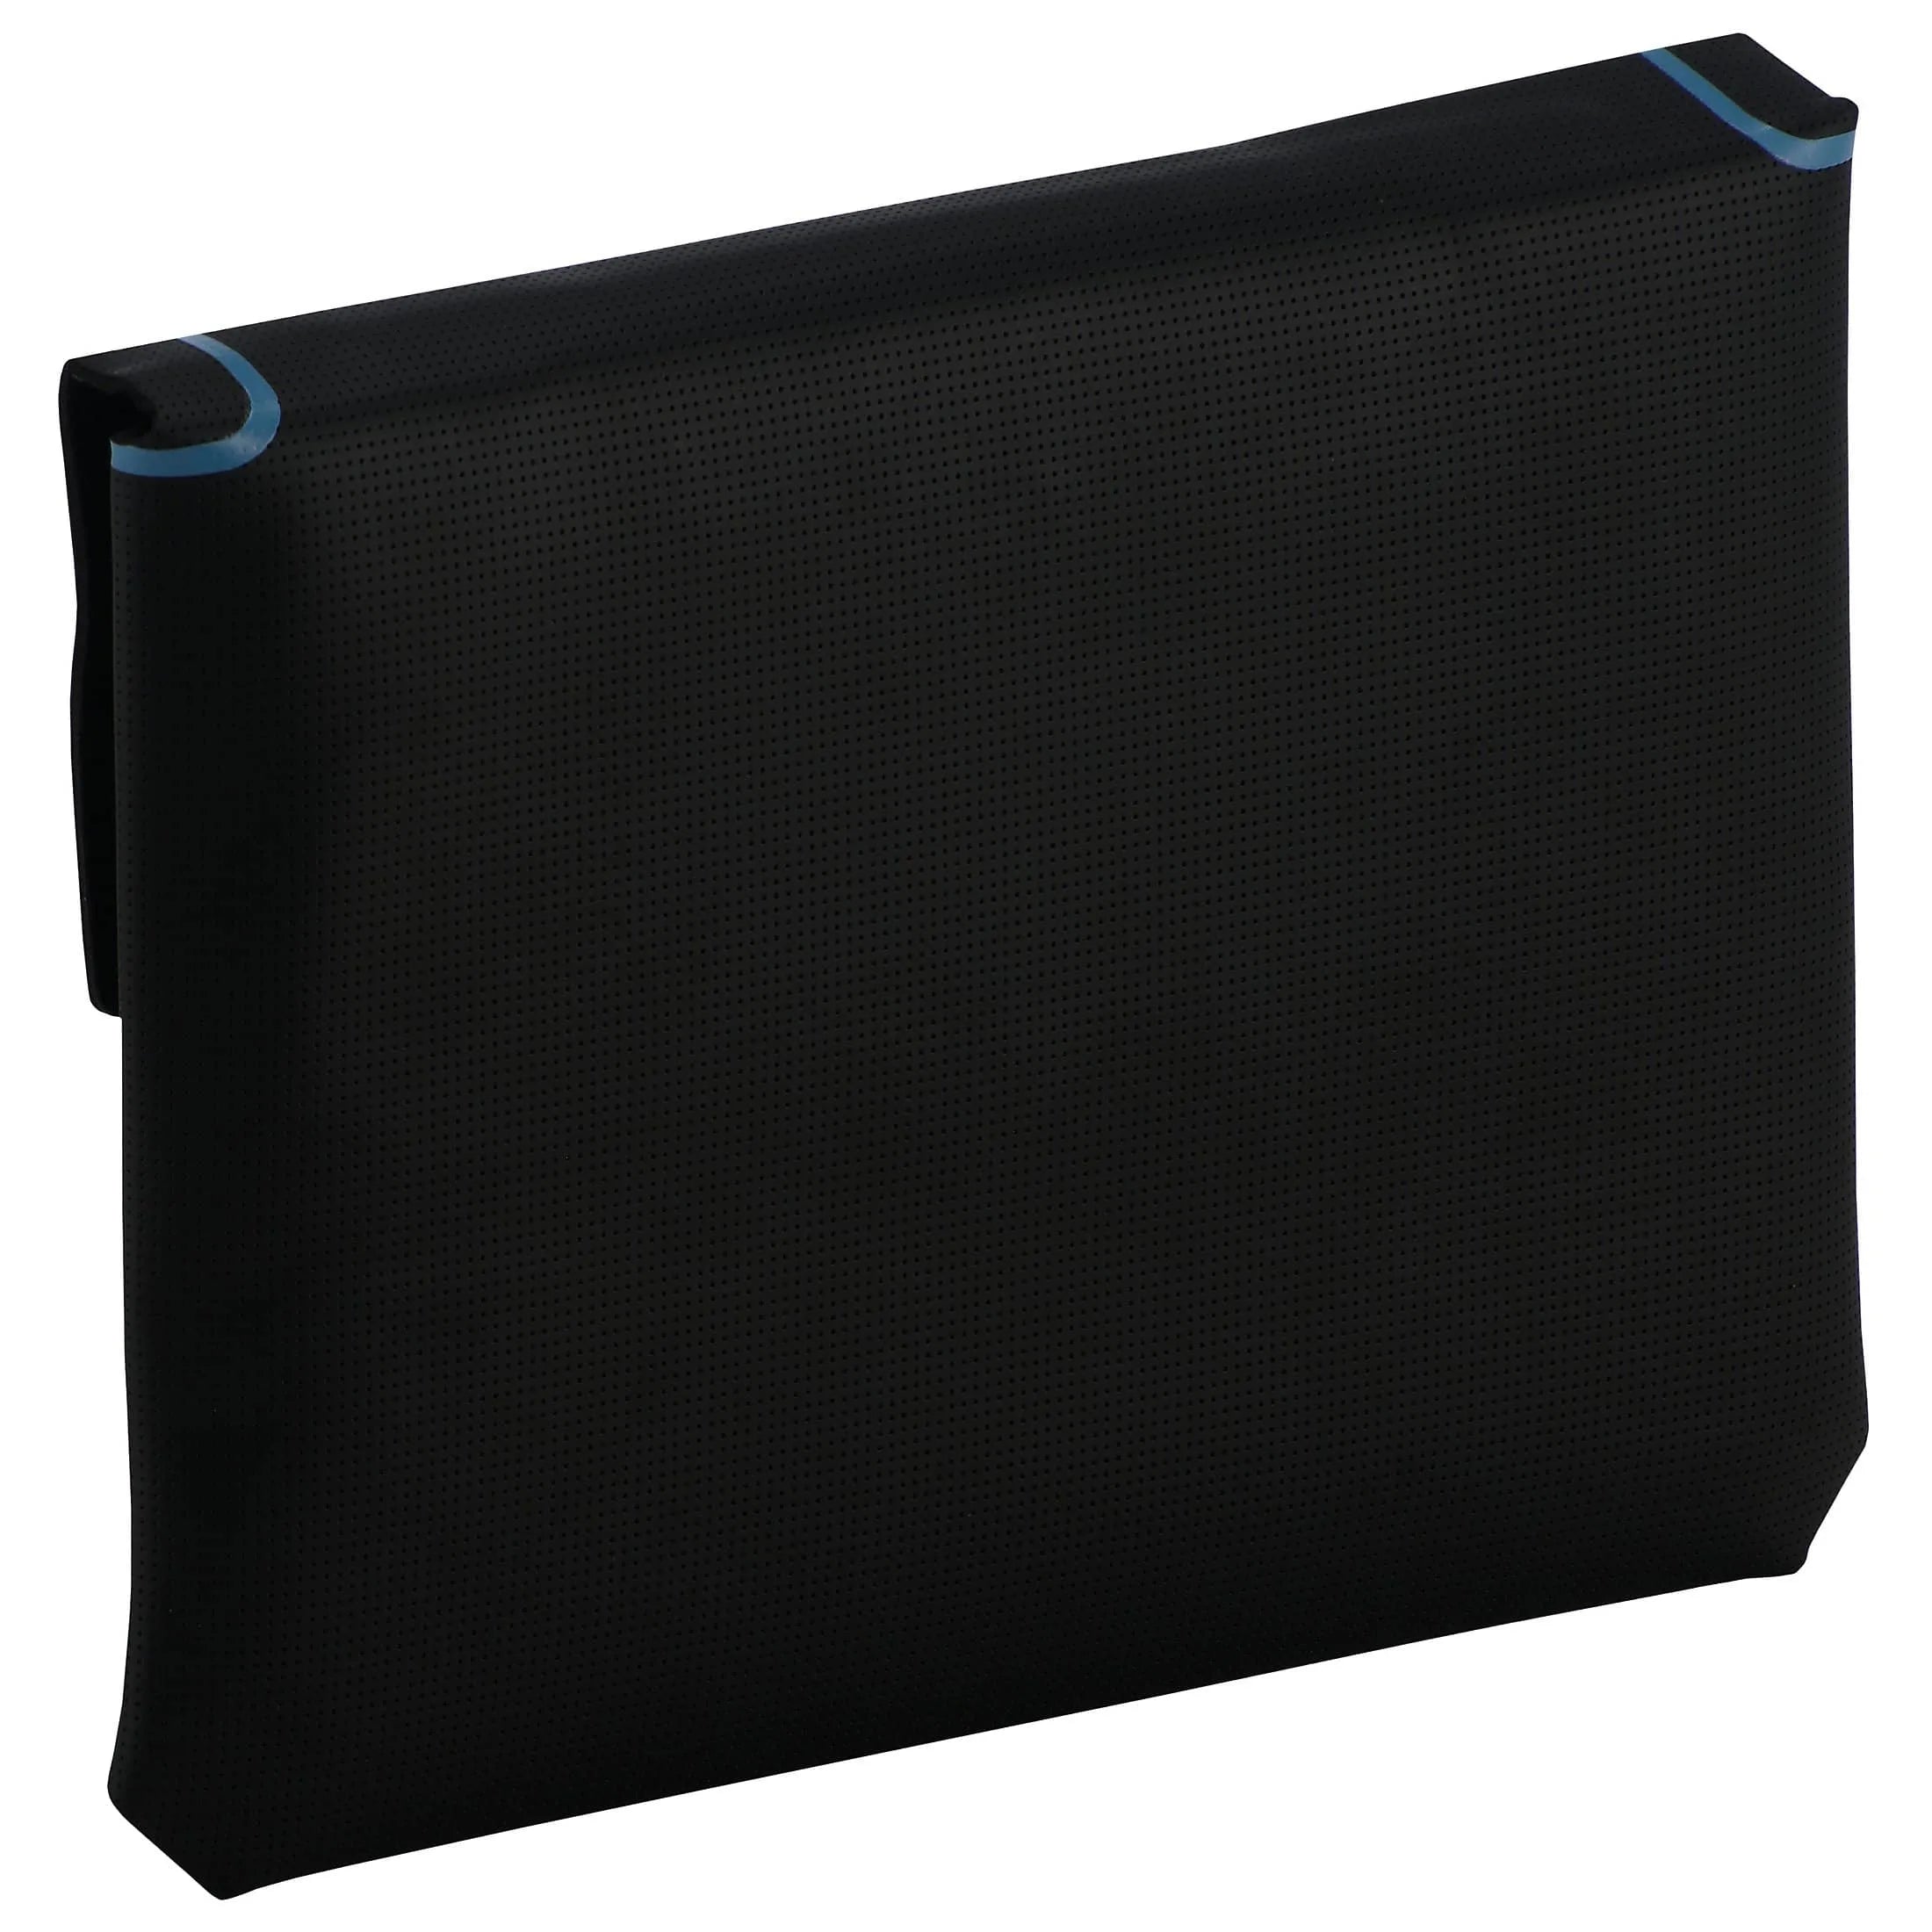 Samsonite Thermo Tech housse pour ordinateur portable 28 cm - noir/bleu clair